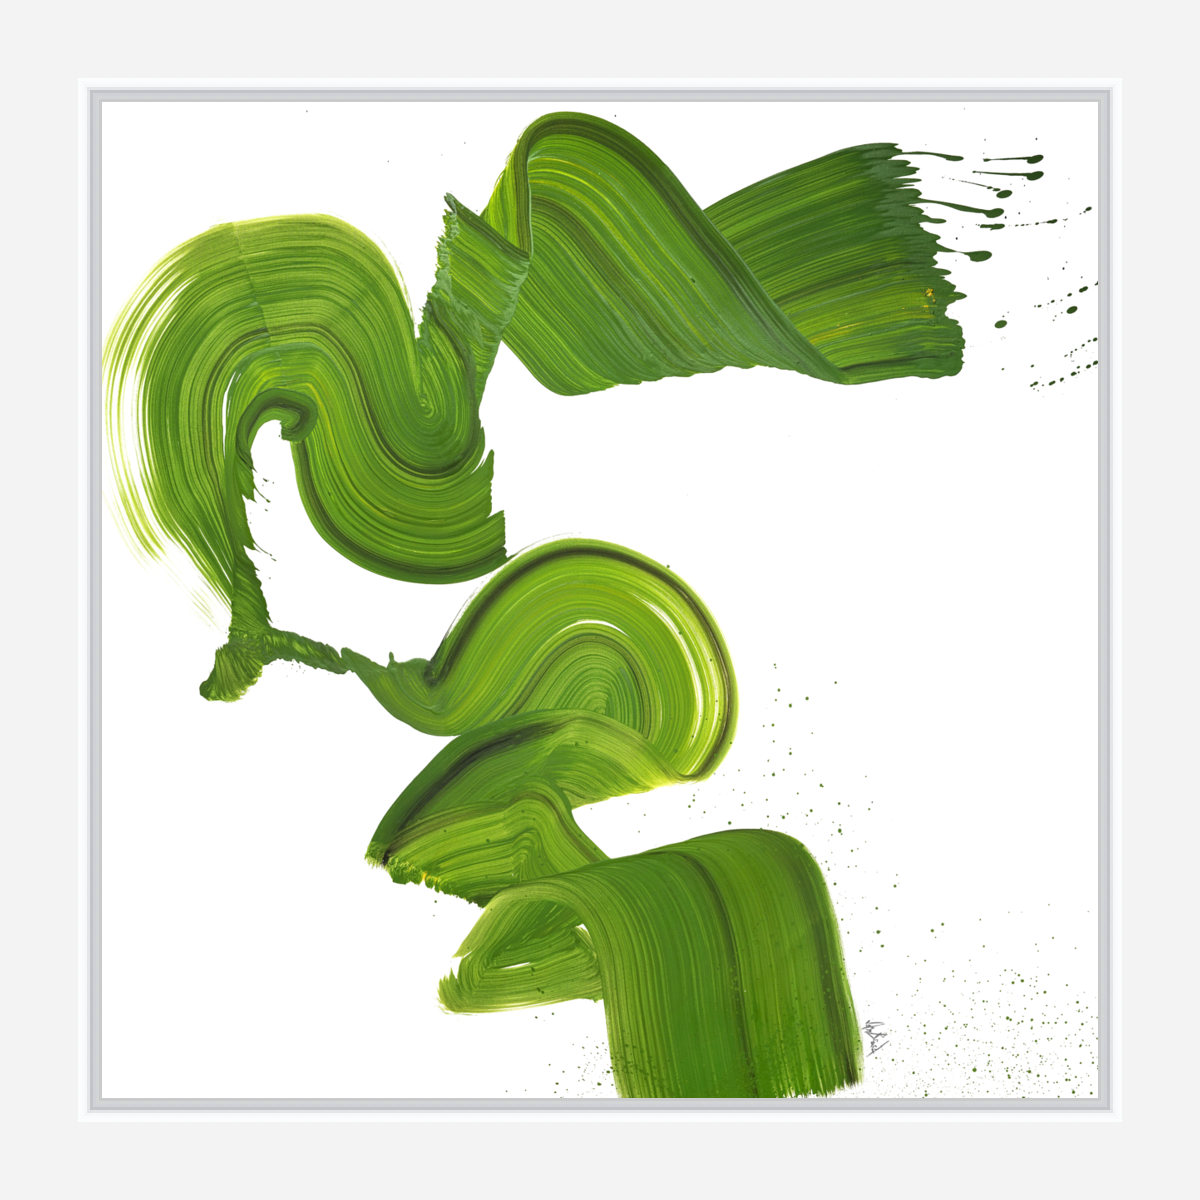 Green Machine Artist Enhanced Canvas Print